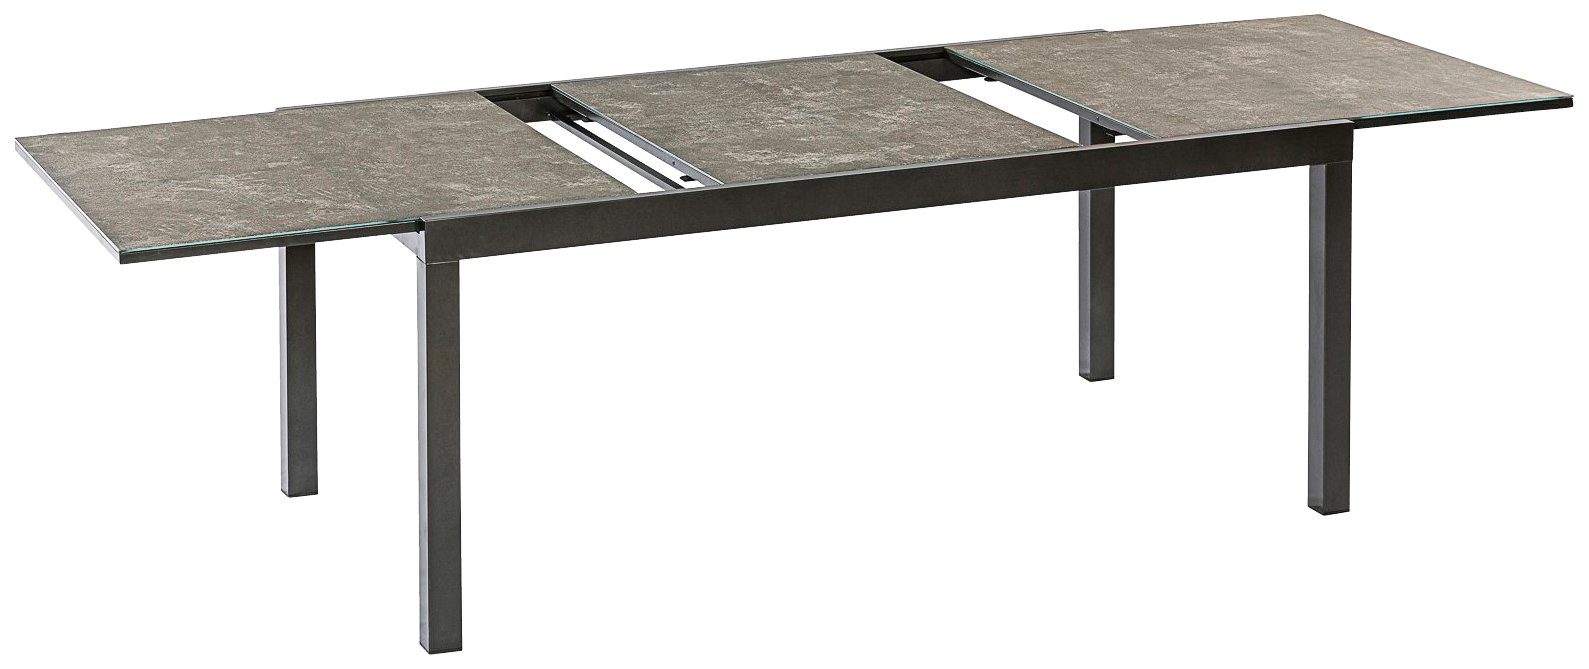 MERXX Gartentisch AZ-Tisch, cm Semi 100x180